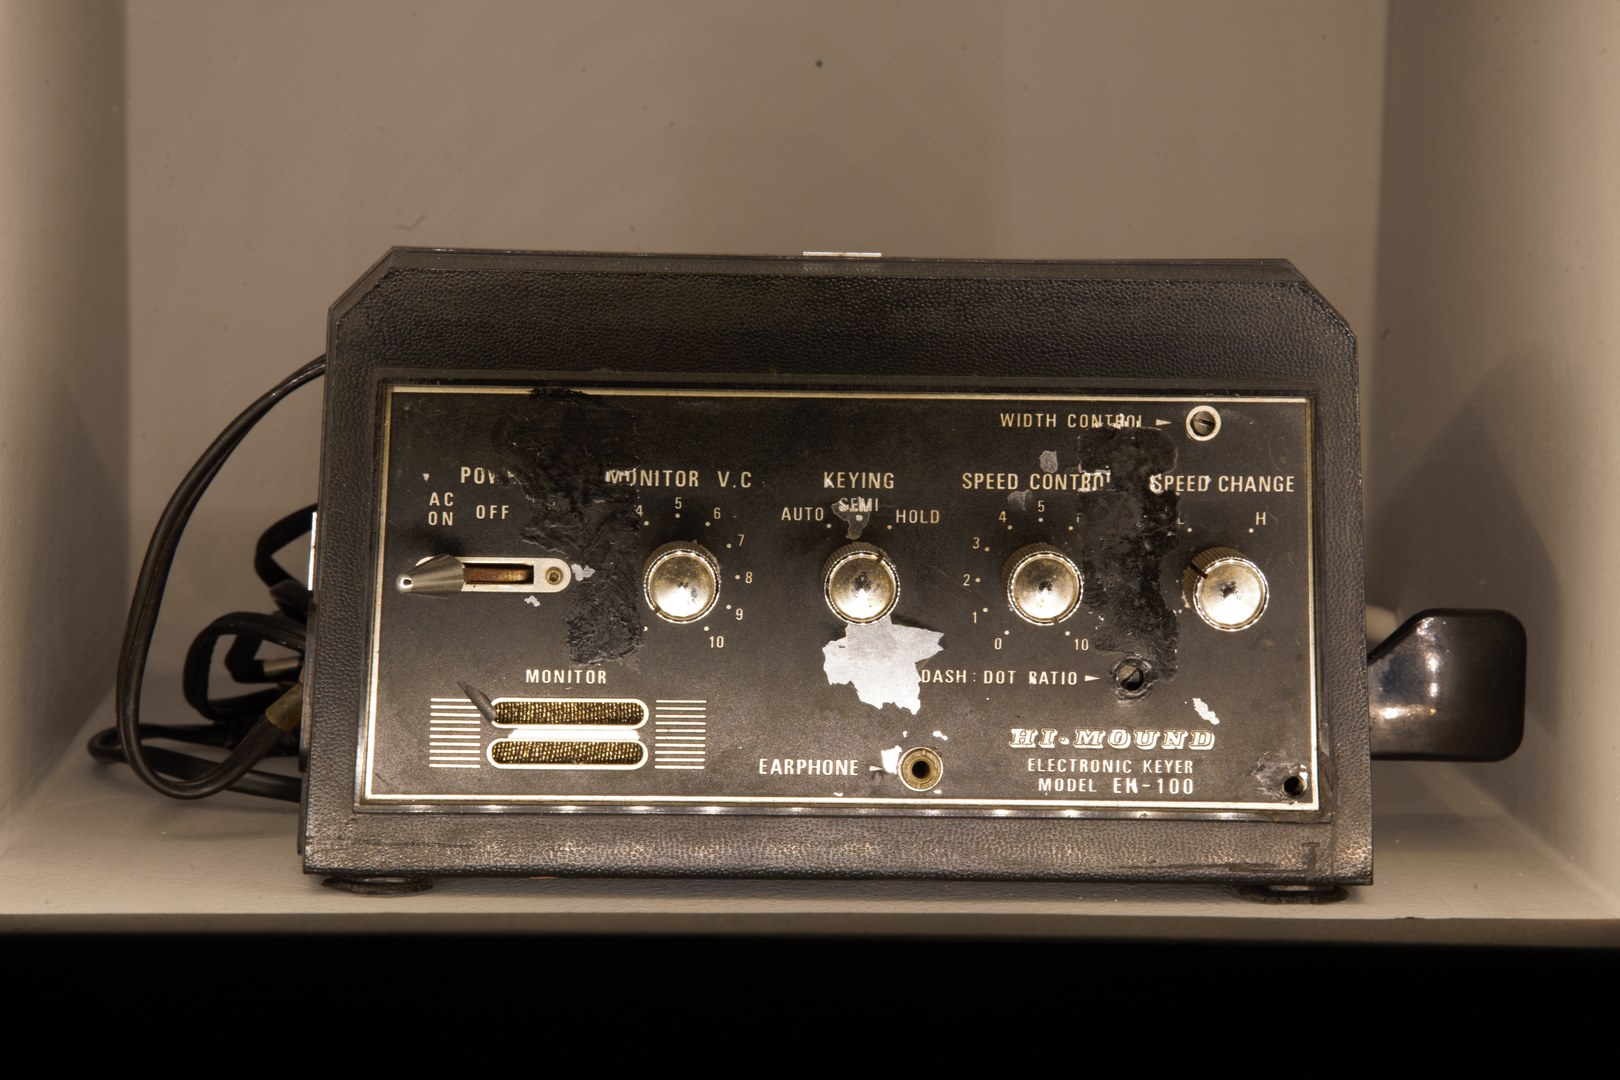 Ηλεκτρισμός και μεγάλοι εφευρέτες - Ηλεκτρονικό χειριστήριο ασύρματης τηλεγραφίας δεκαετίας 1970